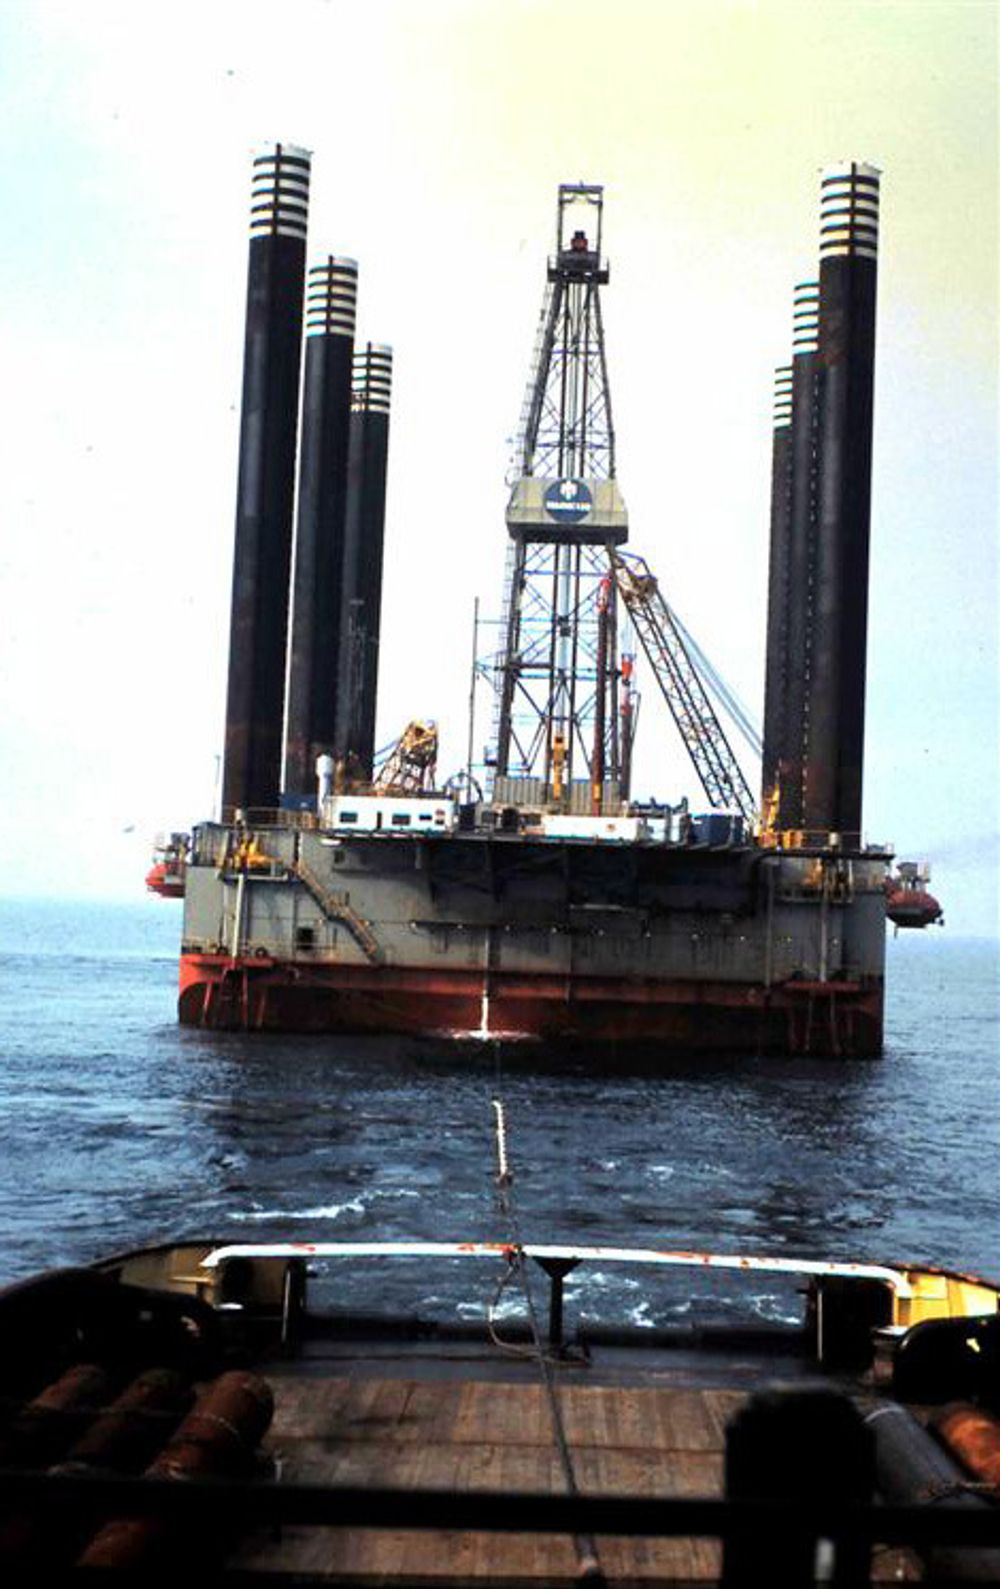 Sank: I 1989 mistet den oppjekkbare riggen Interocean 2 stabiliteten under tauing i Nordsjøen. Strukturen feilet i en storm, riggen veltet og sank.